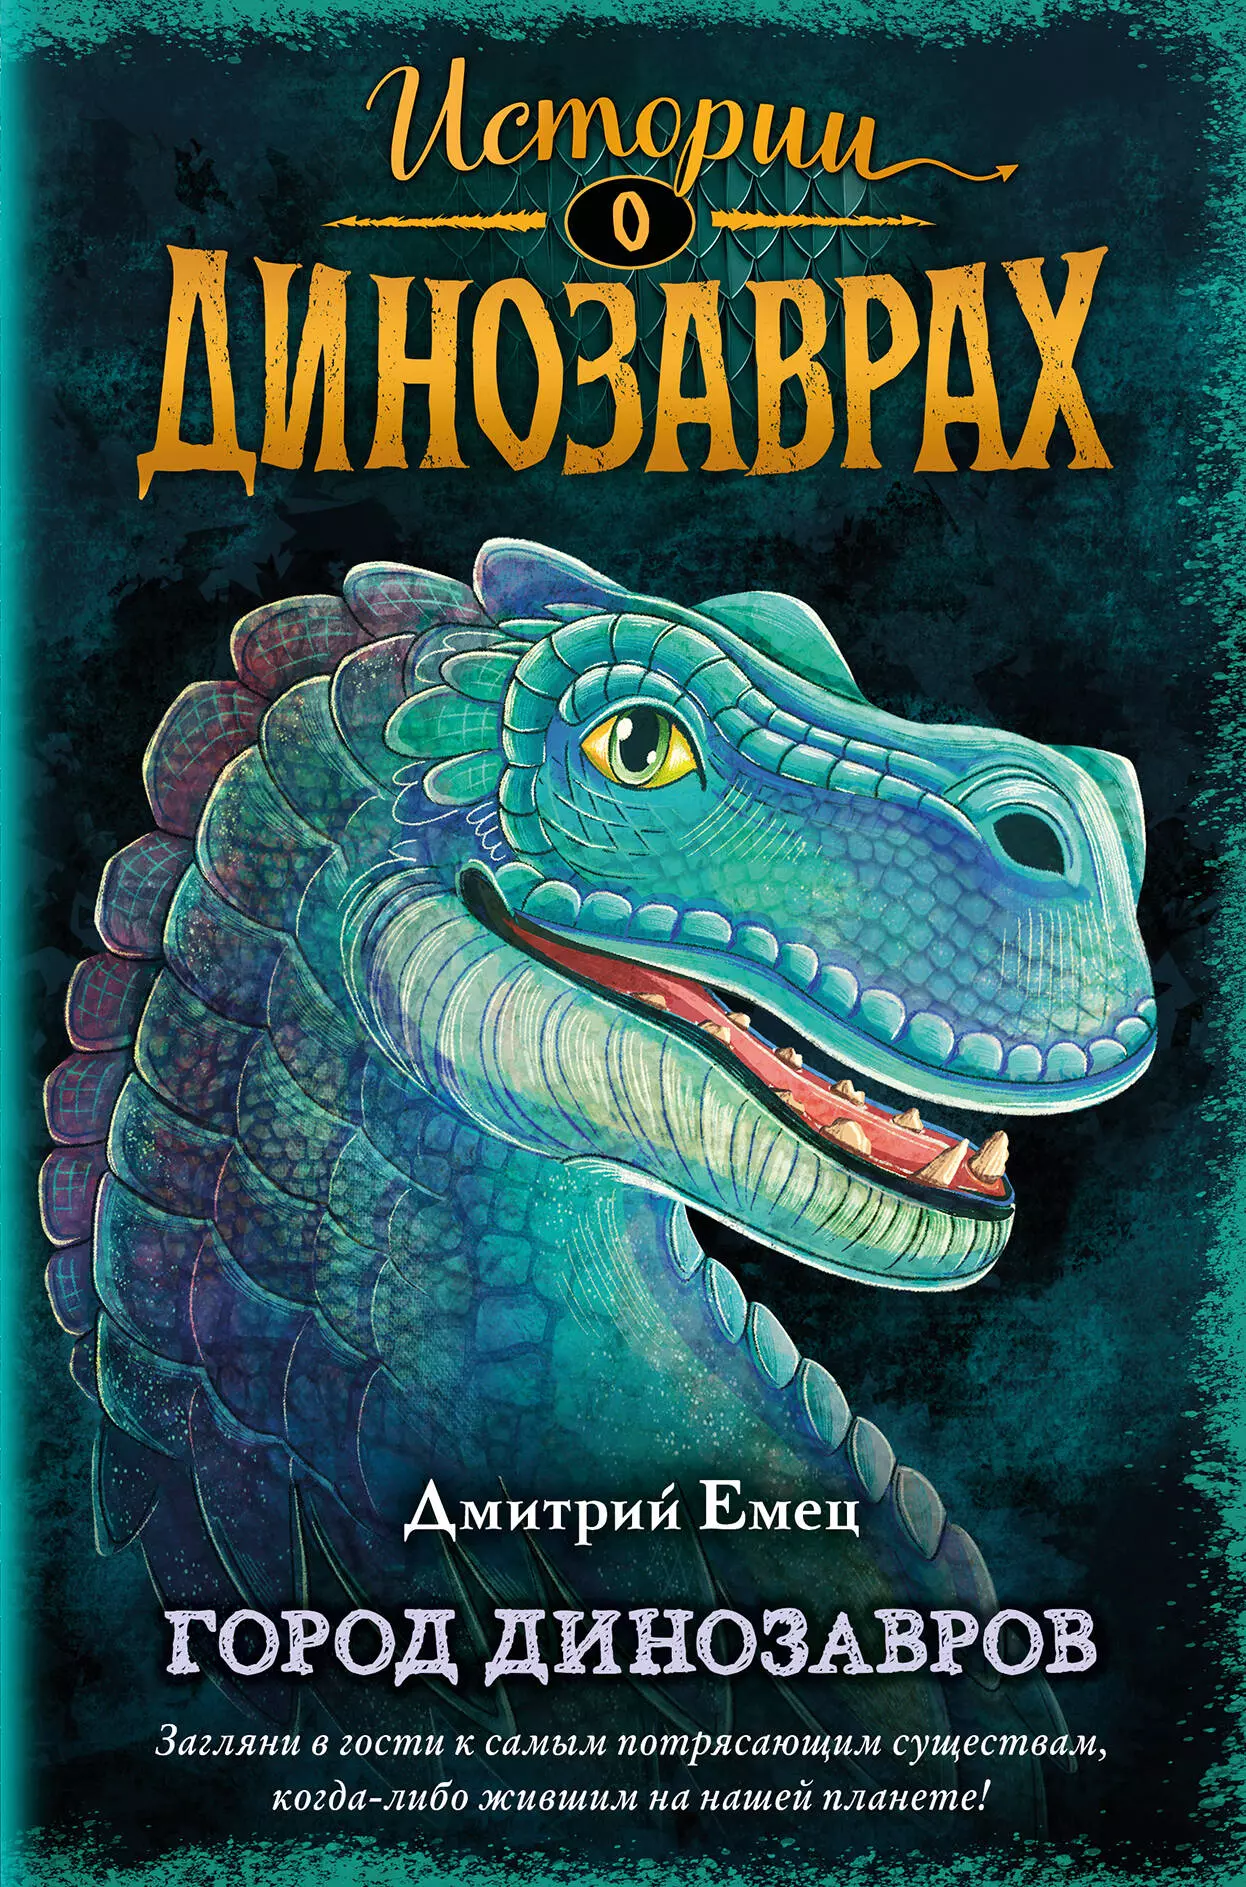 Емец Дмитрий Александрович - Город динозавров (выпуск 3)